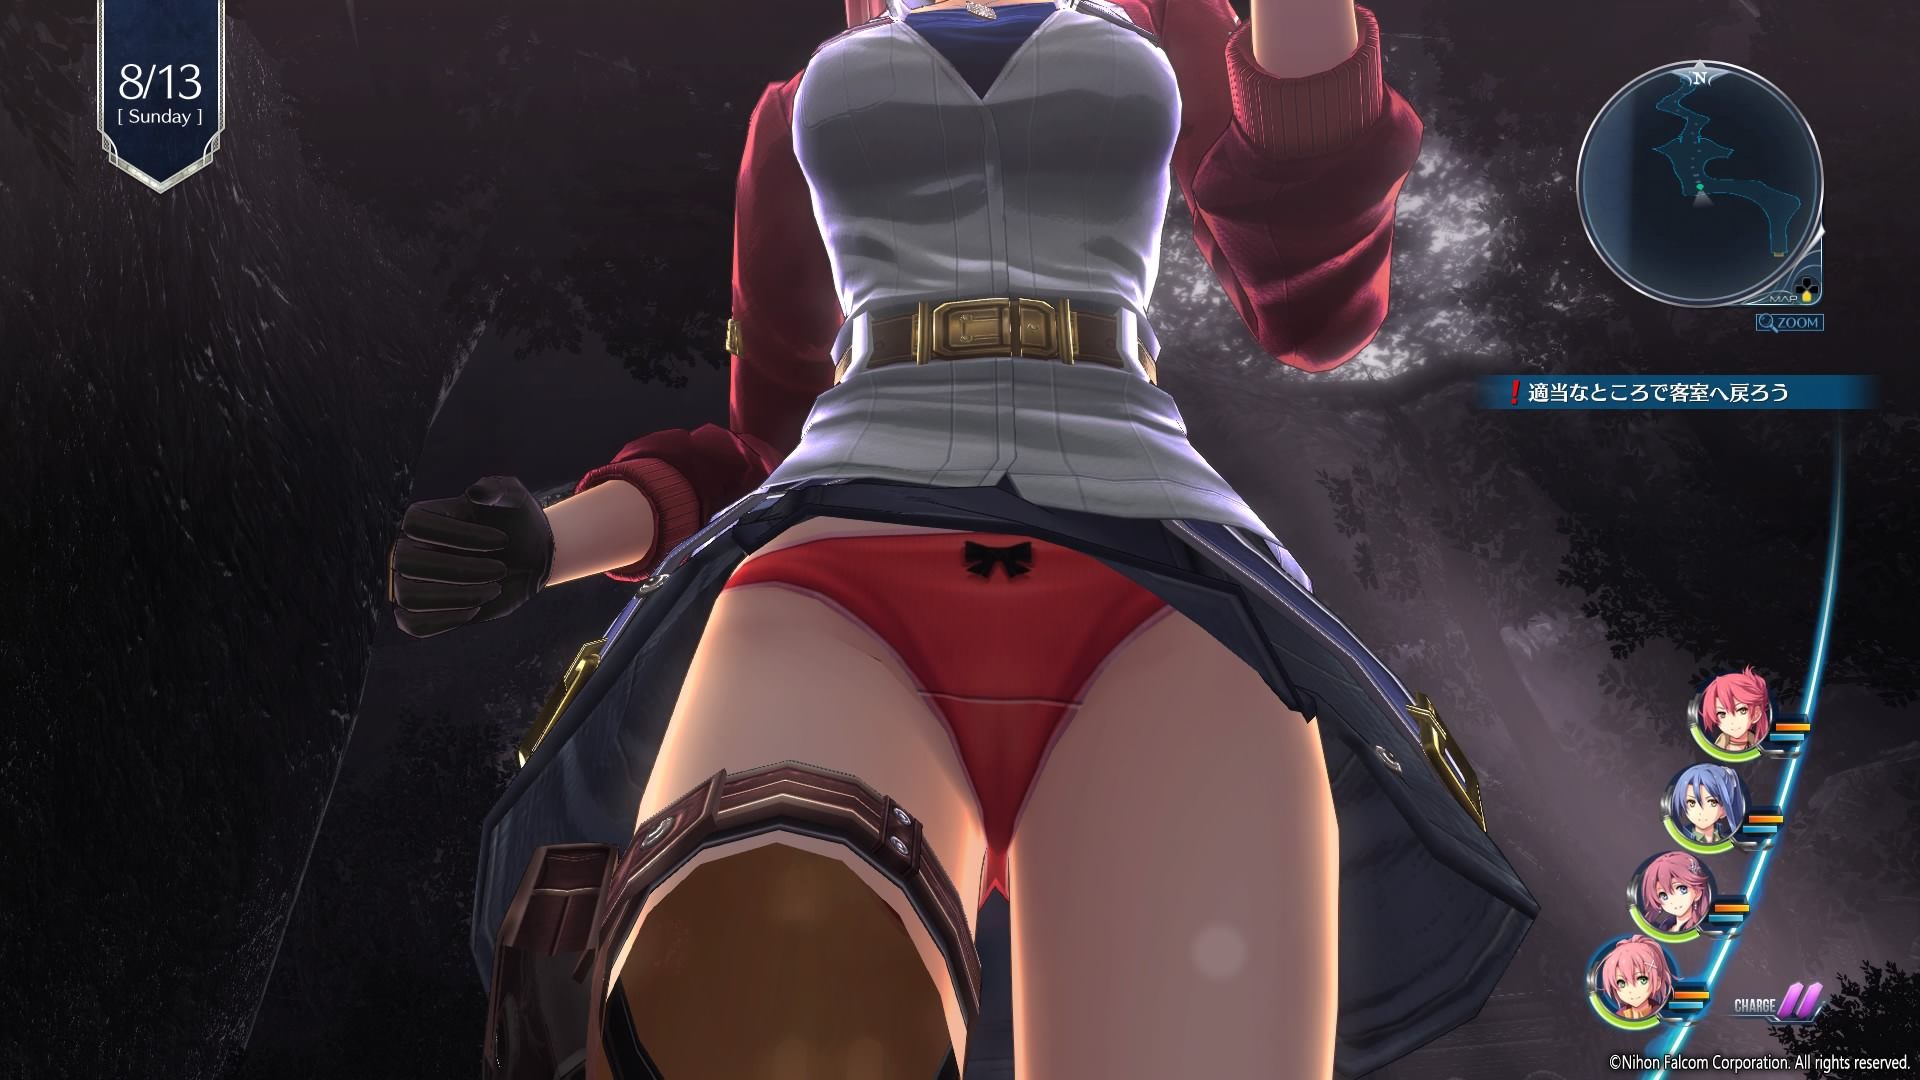 Erotic pants Gattsuri peek from below the skirt of [Legend of Heroes Senran IV] of the girl in fully exposed! 3